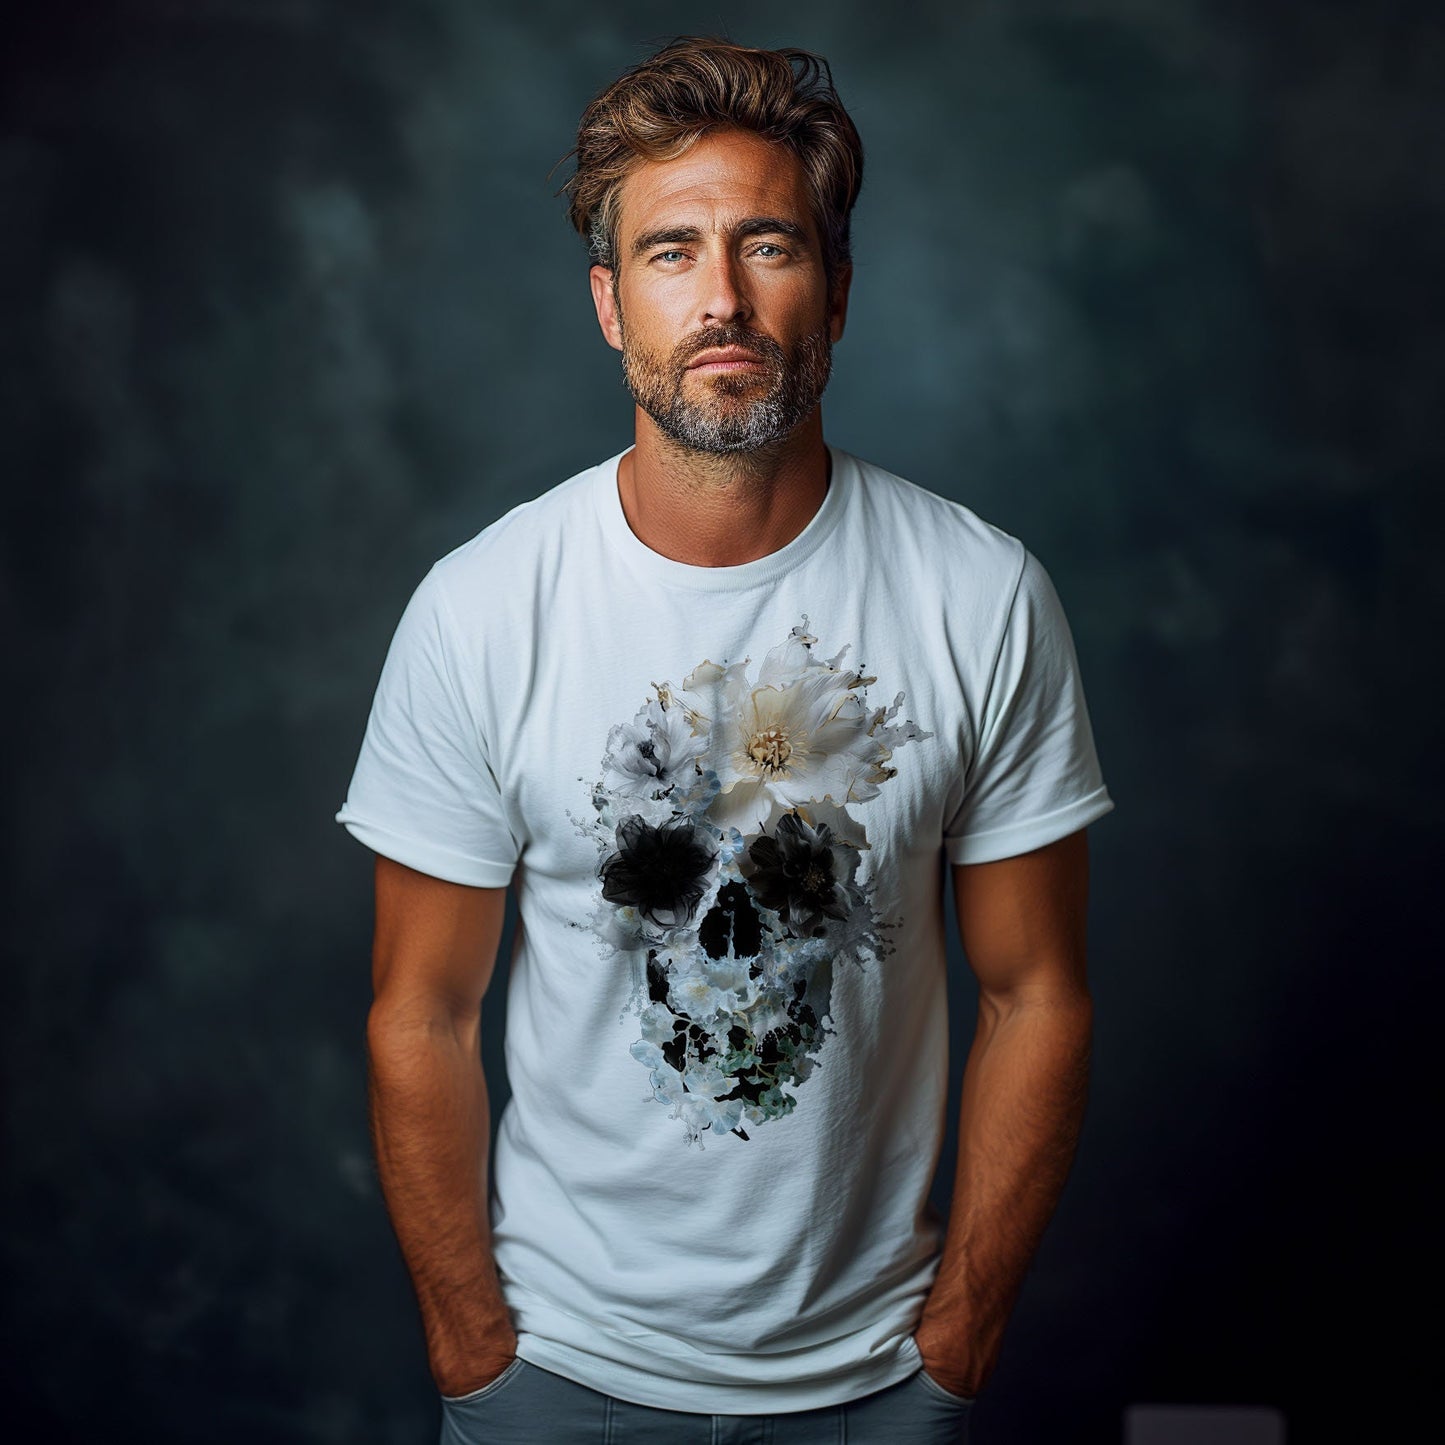 Bloom Skull Men's T shirt, Skull Printed Shirt Gift For Him, Bella Canvas Skull Art Graphic Tee Gift